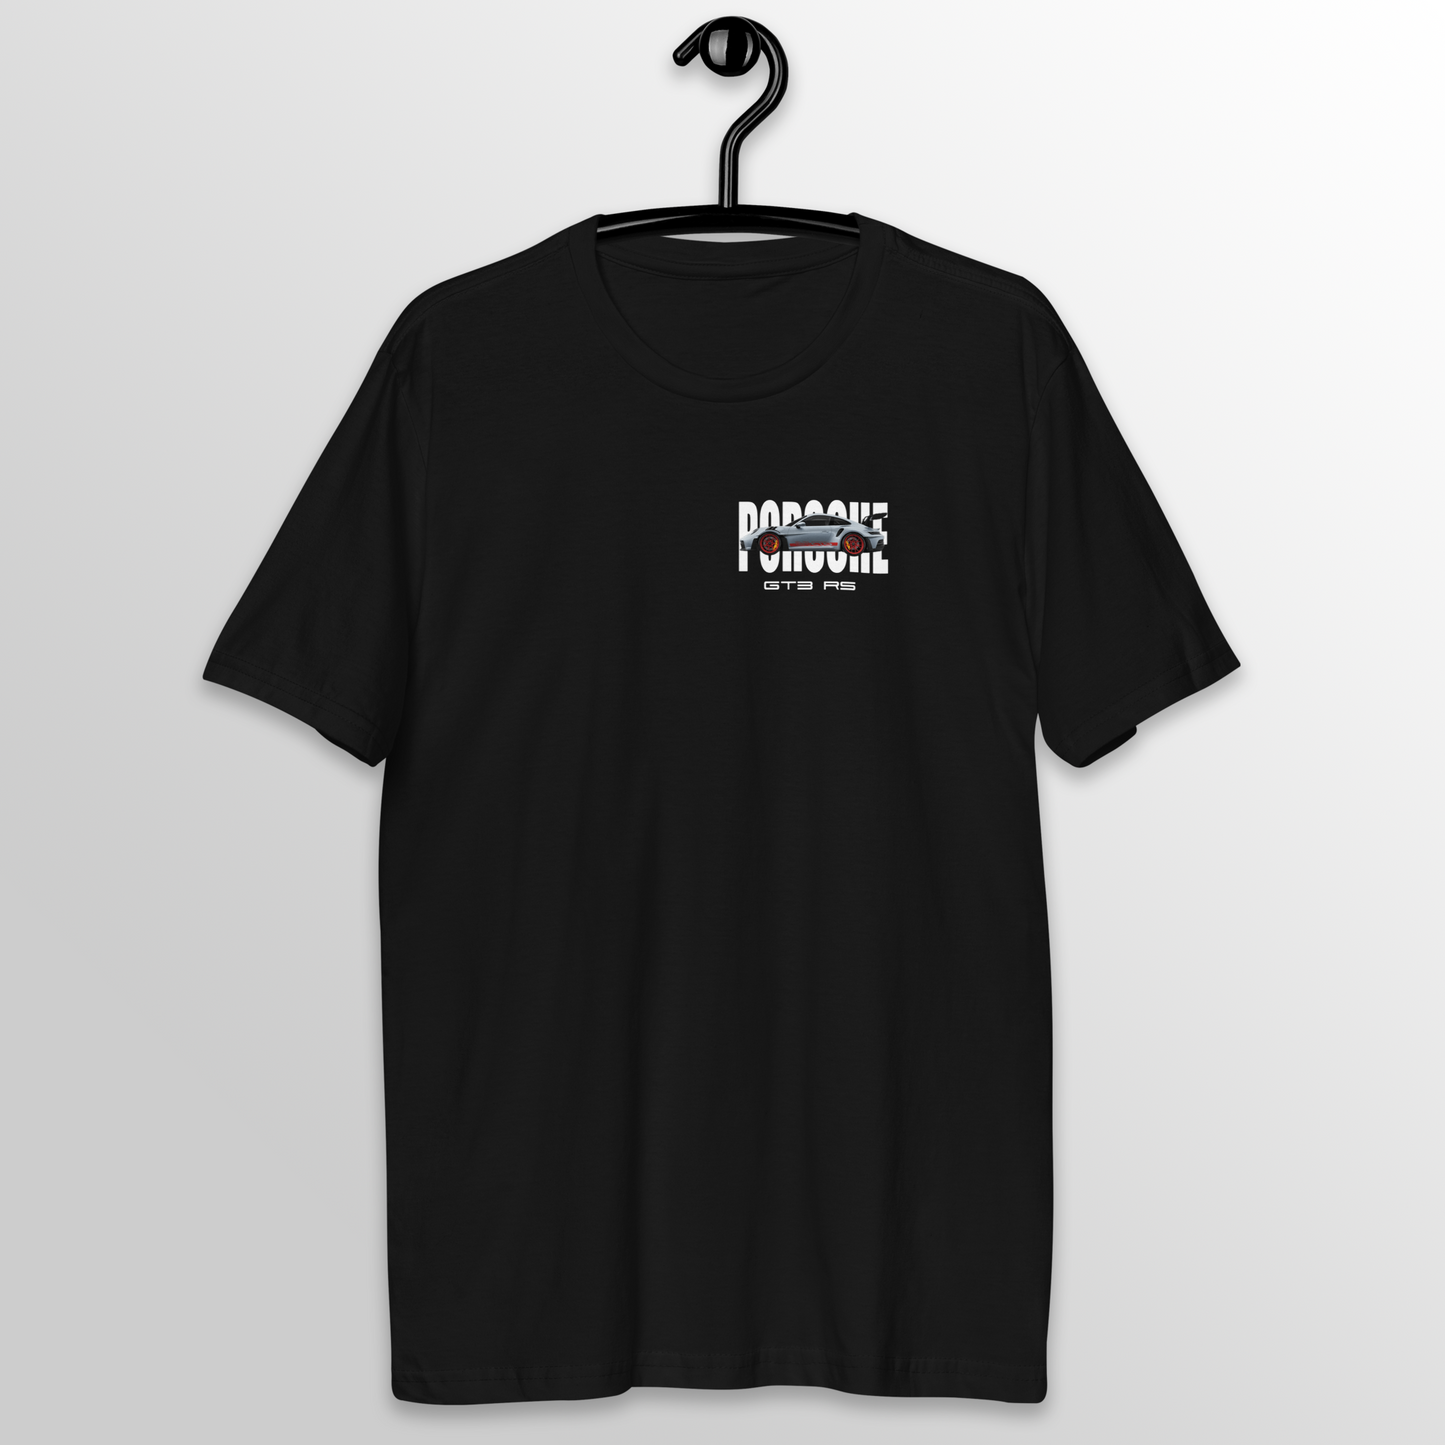 Camiseta - I Need Money